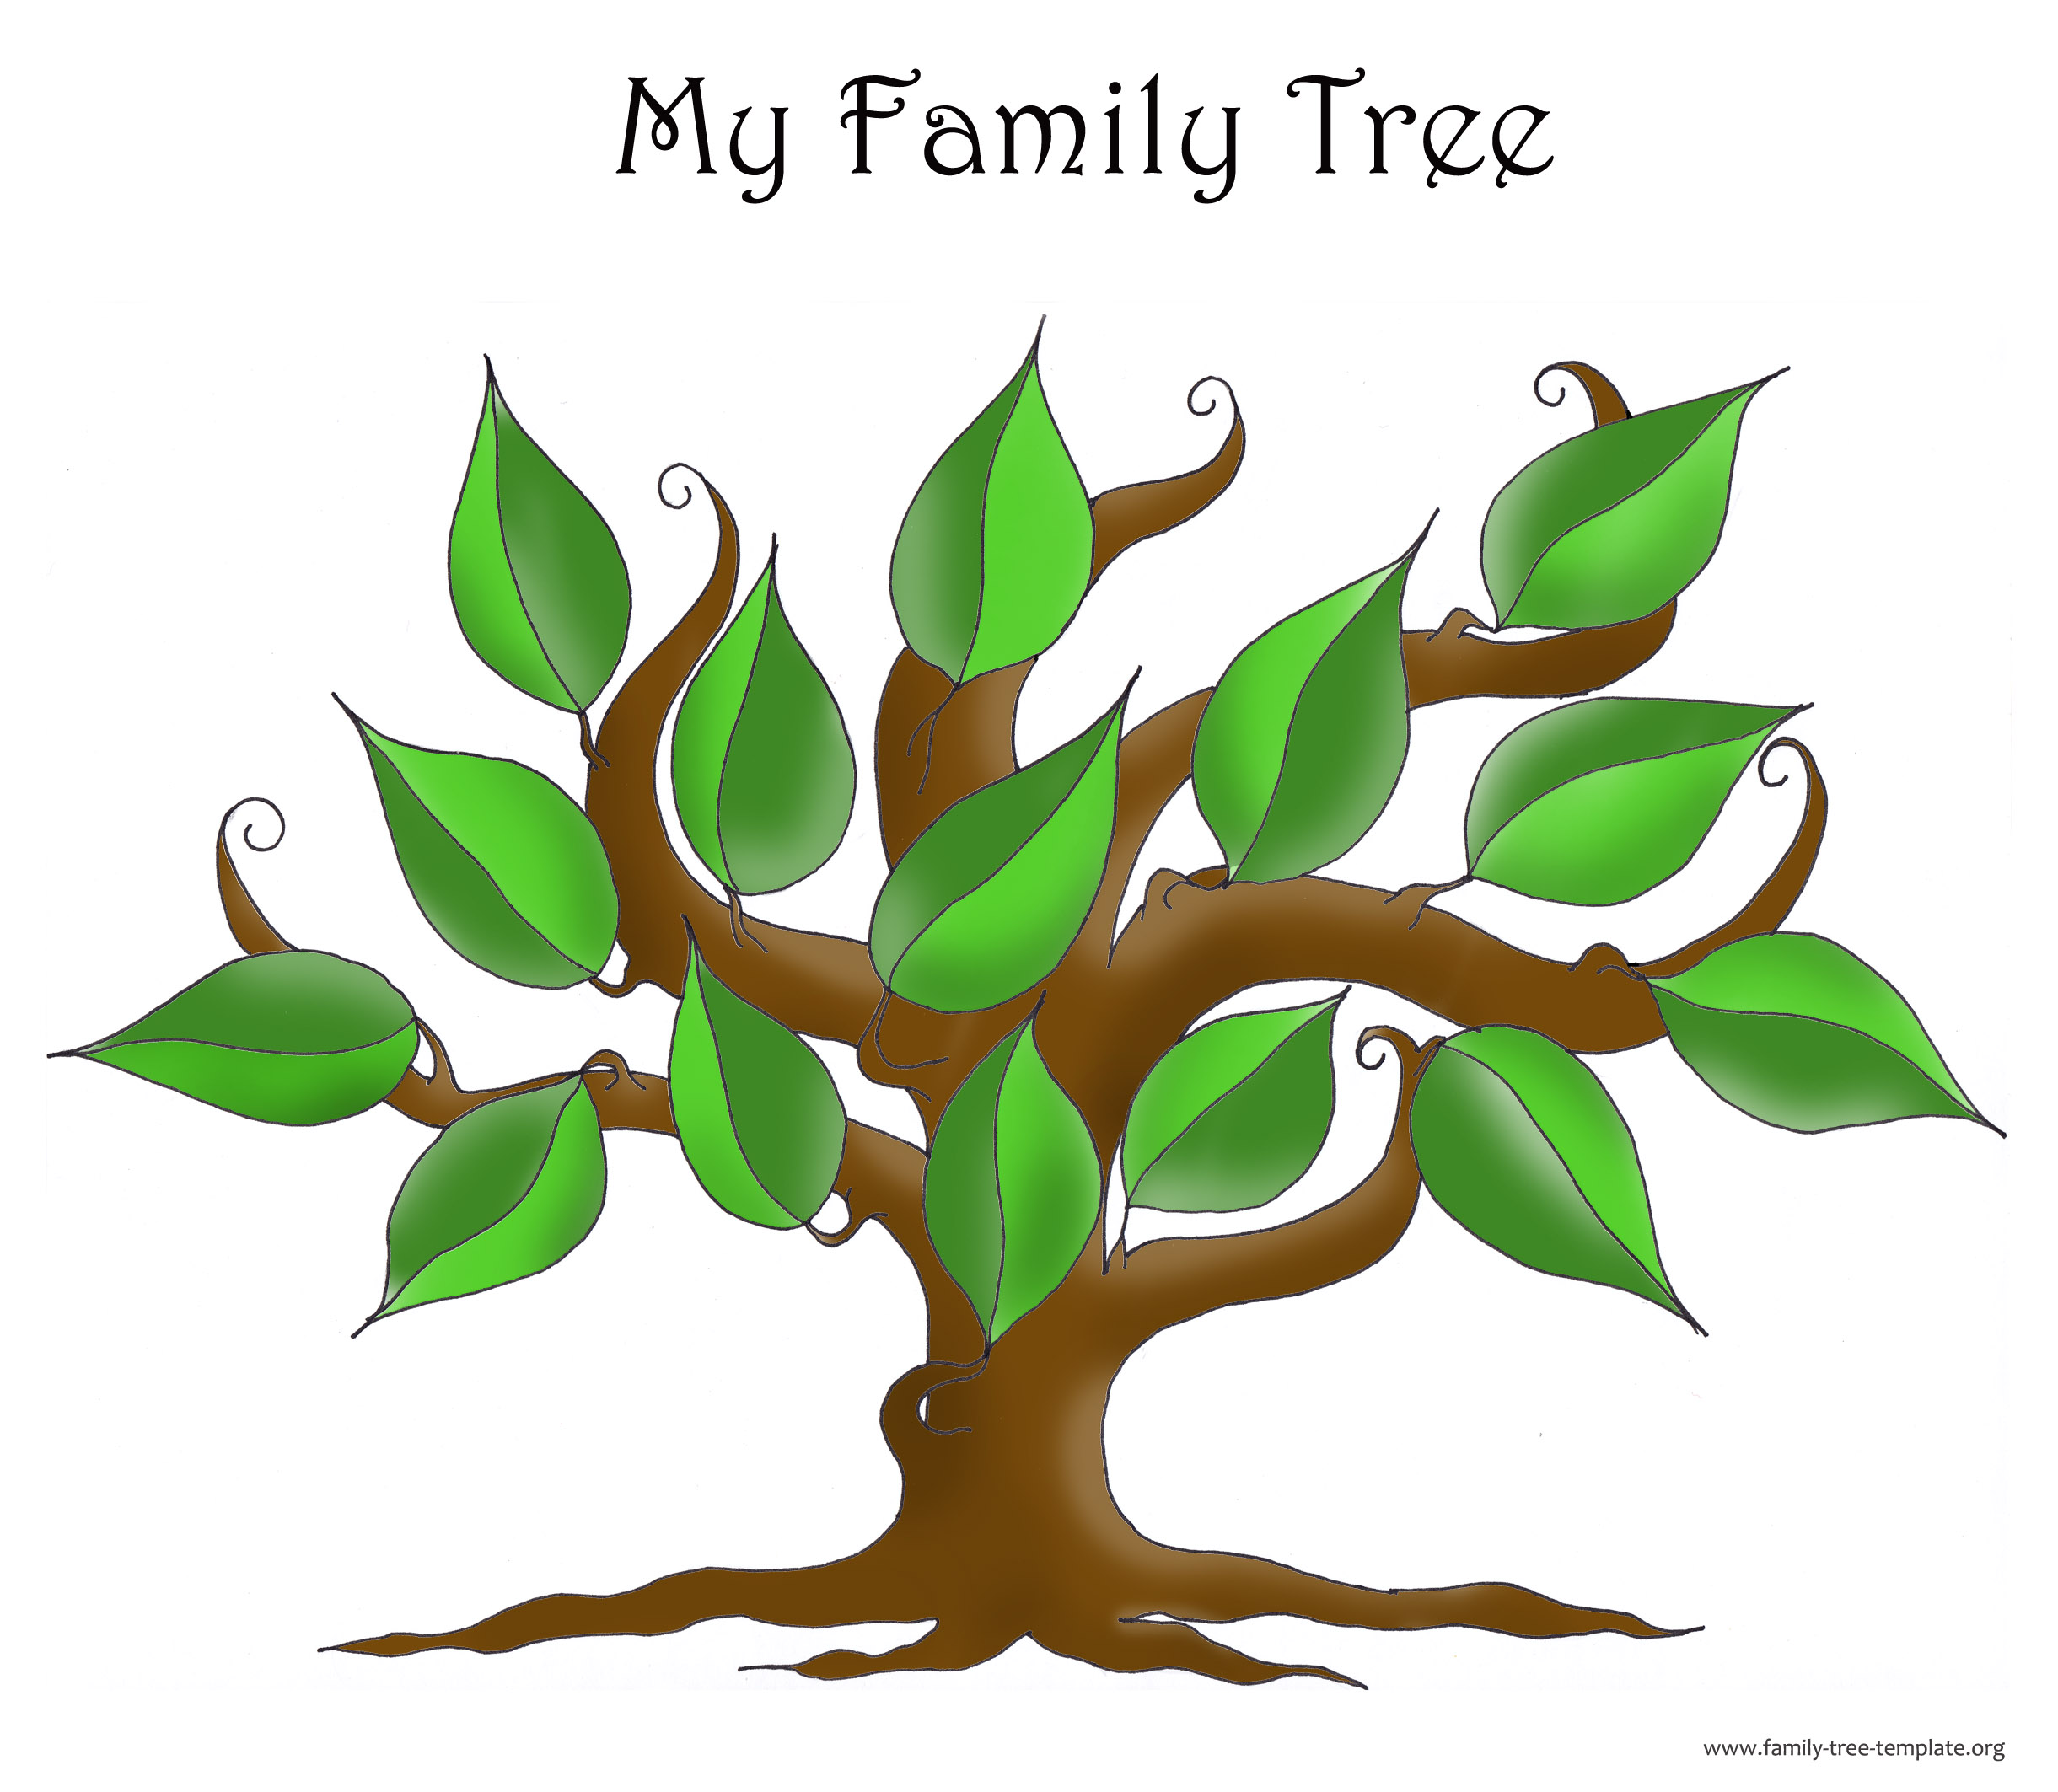 clipart family tree maker - photo #24